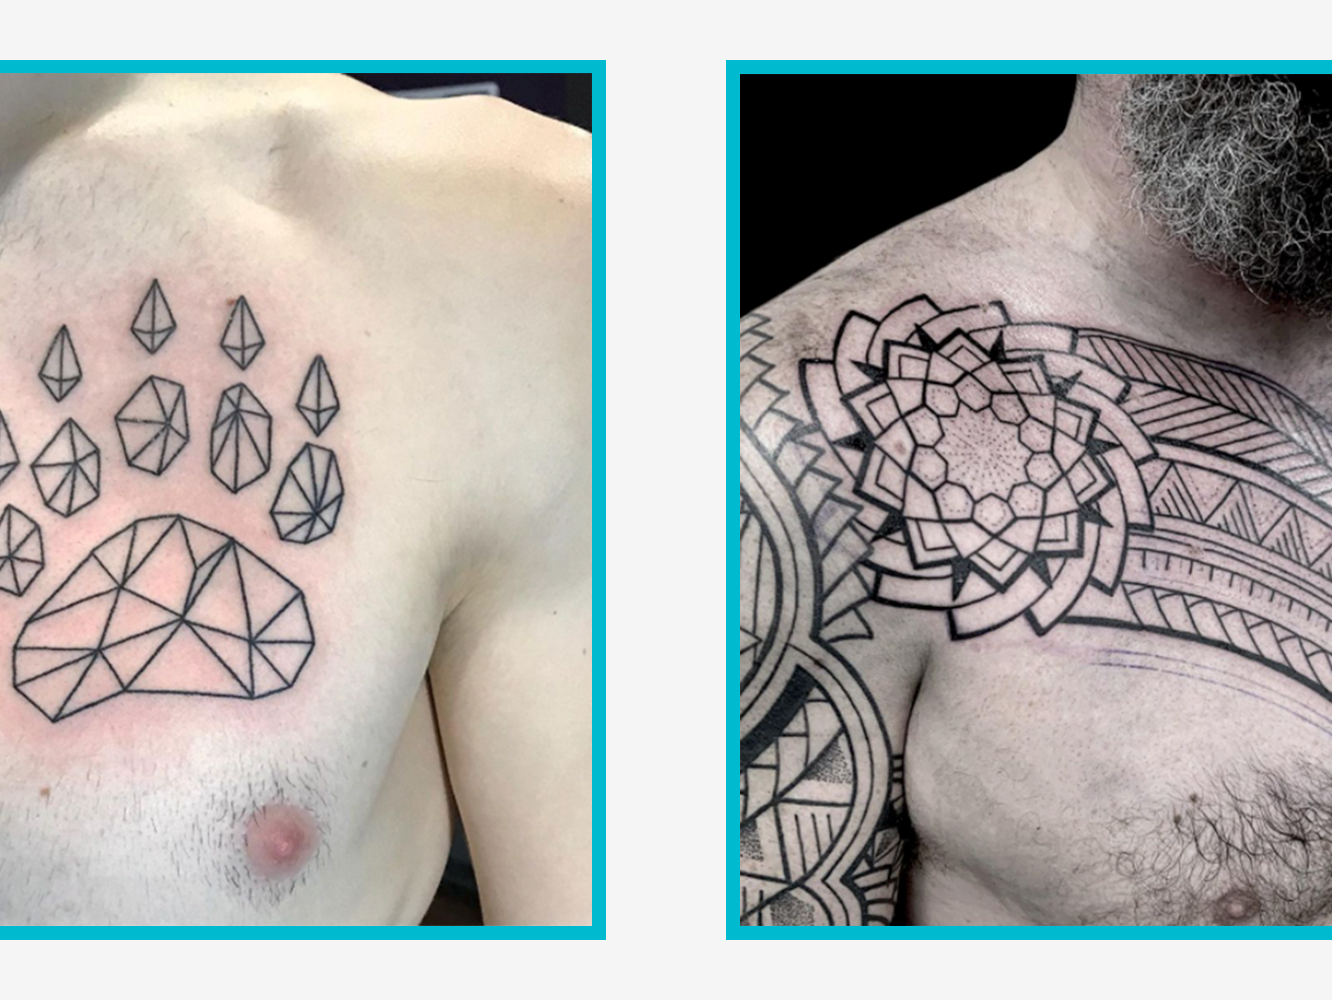 best tattoos for men on chest